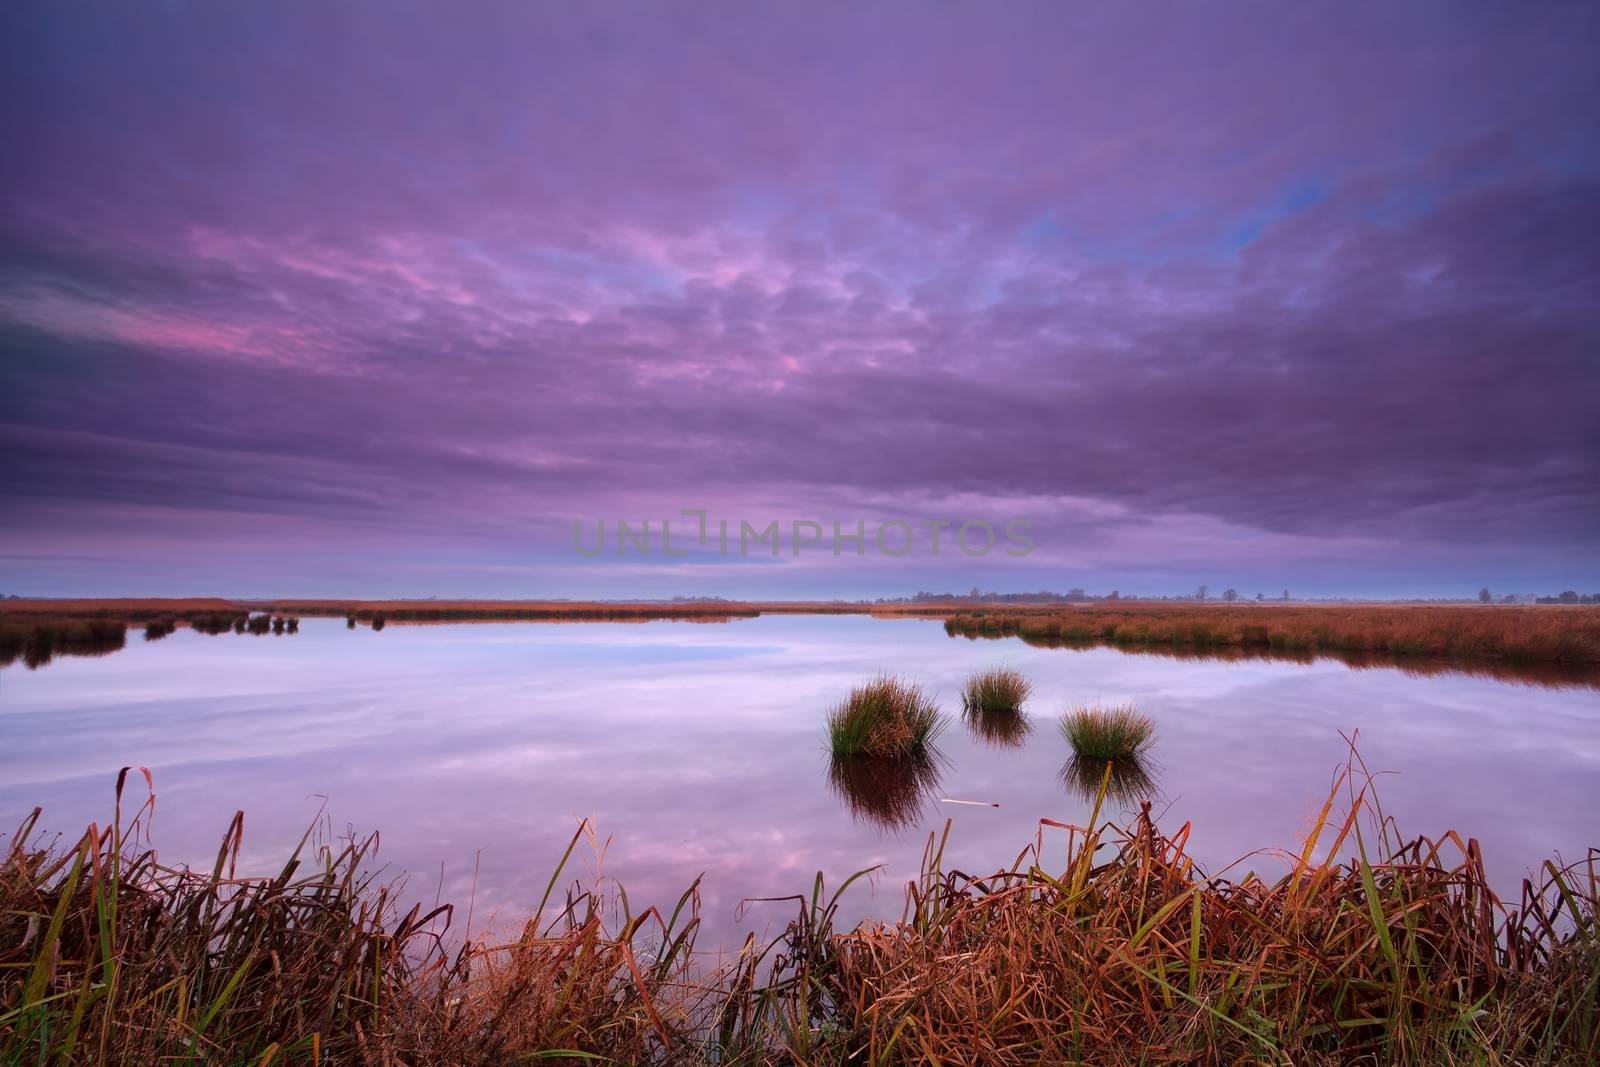 sunrise over swamp, Onlanden, Drenthe, Netherlands